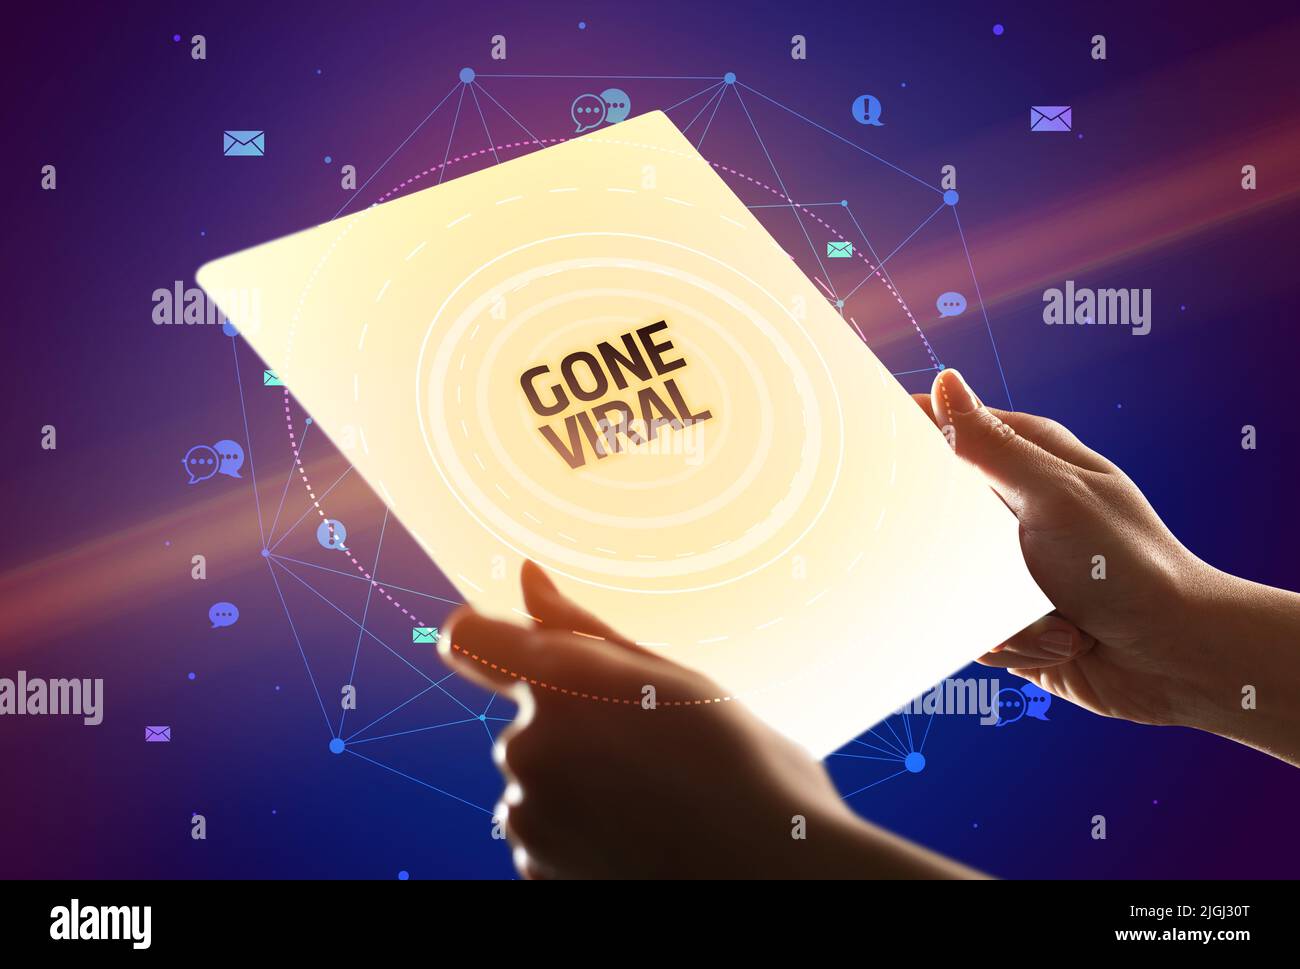 Celebración tableta futurista con ido viral, medios sociales concepto de inscripción Foto de stock